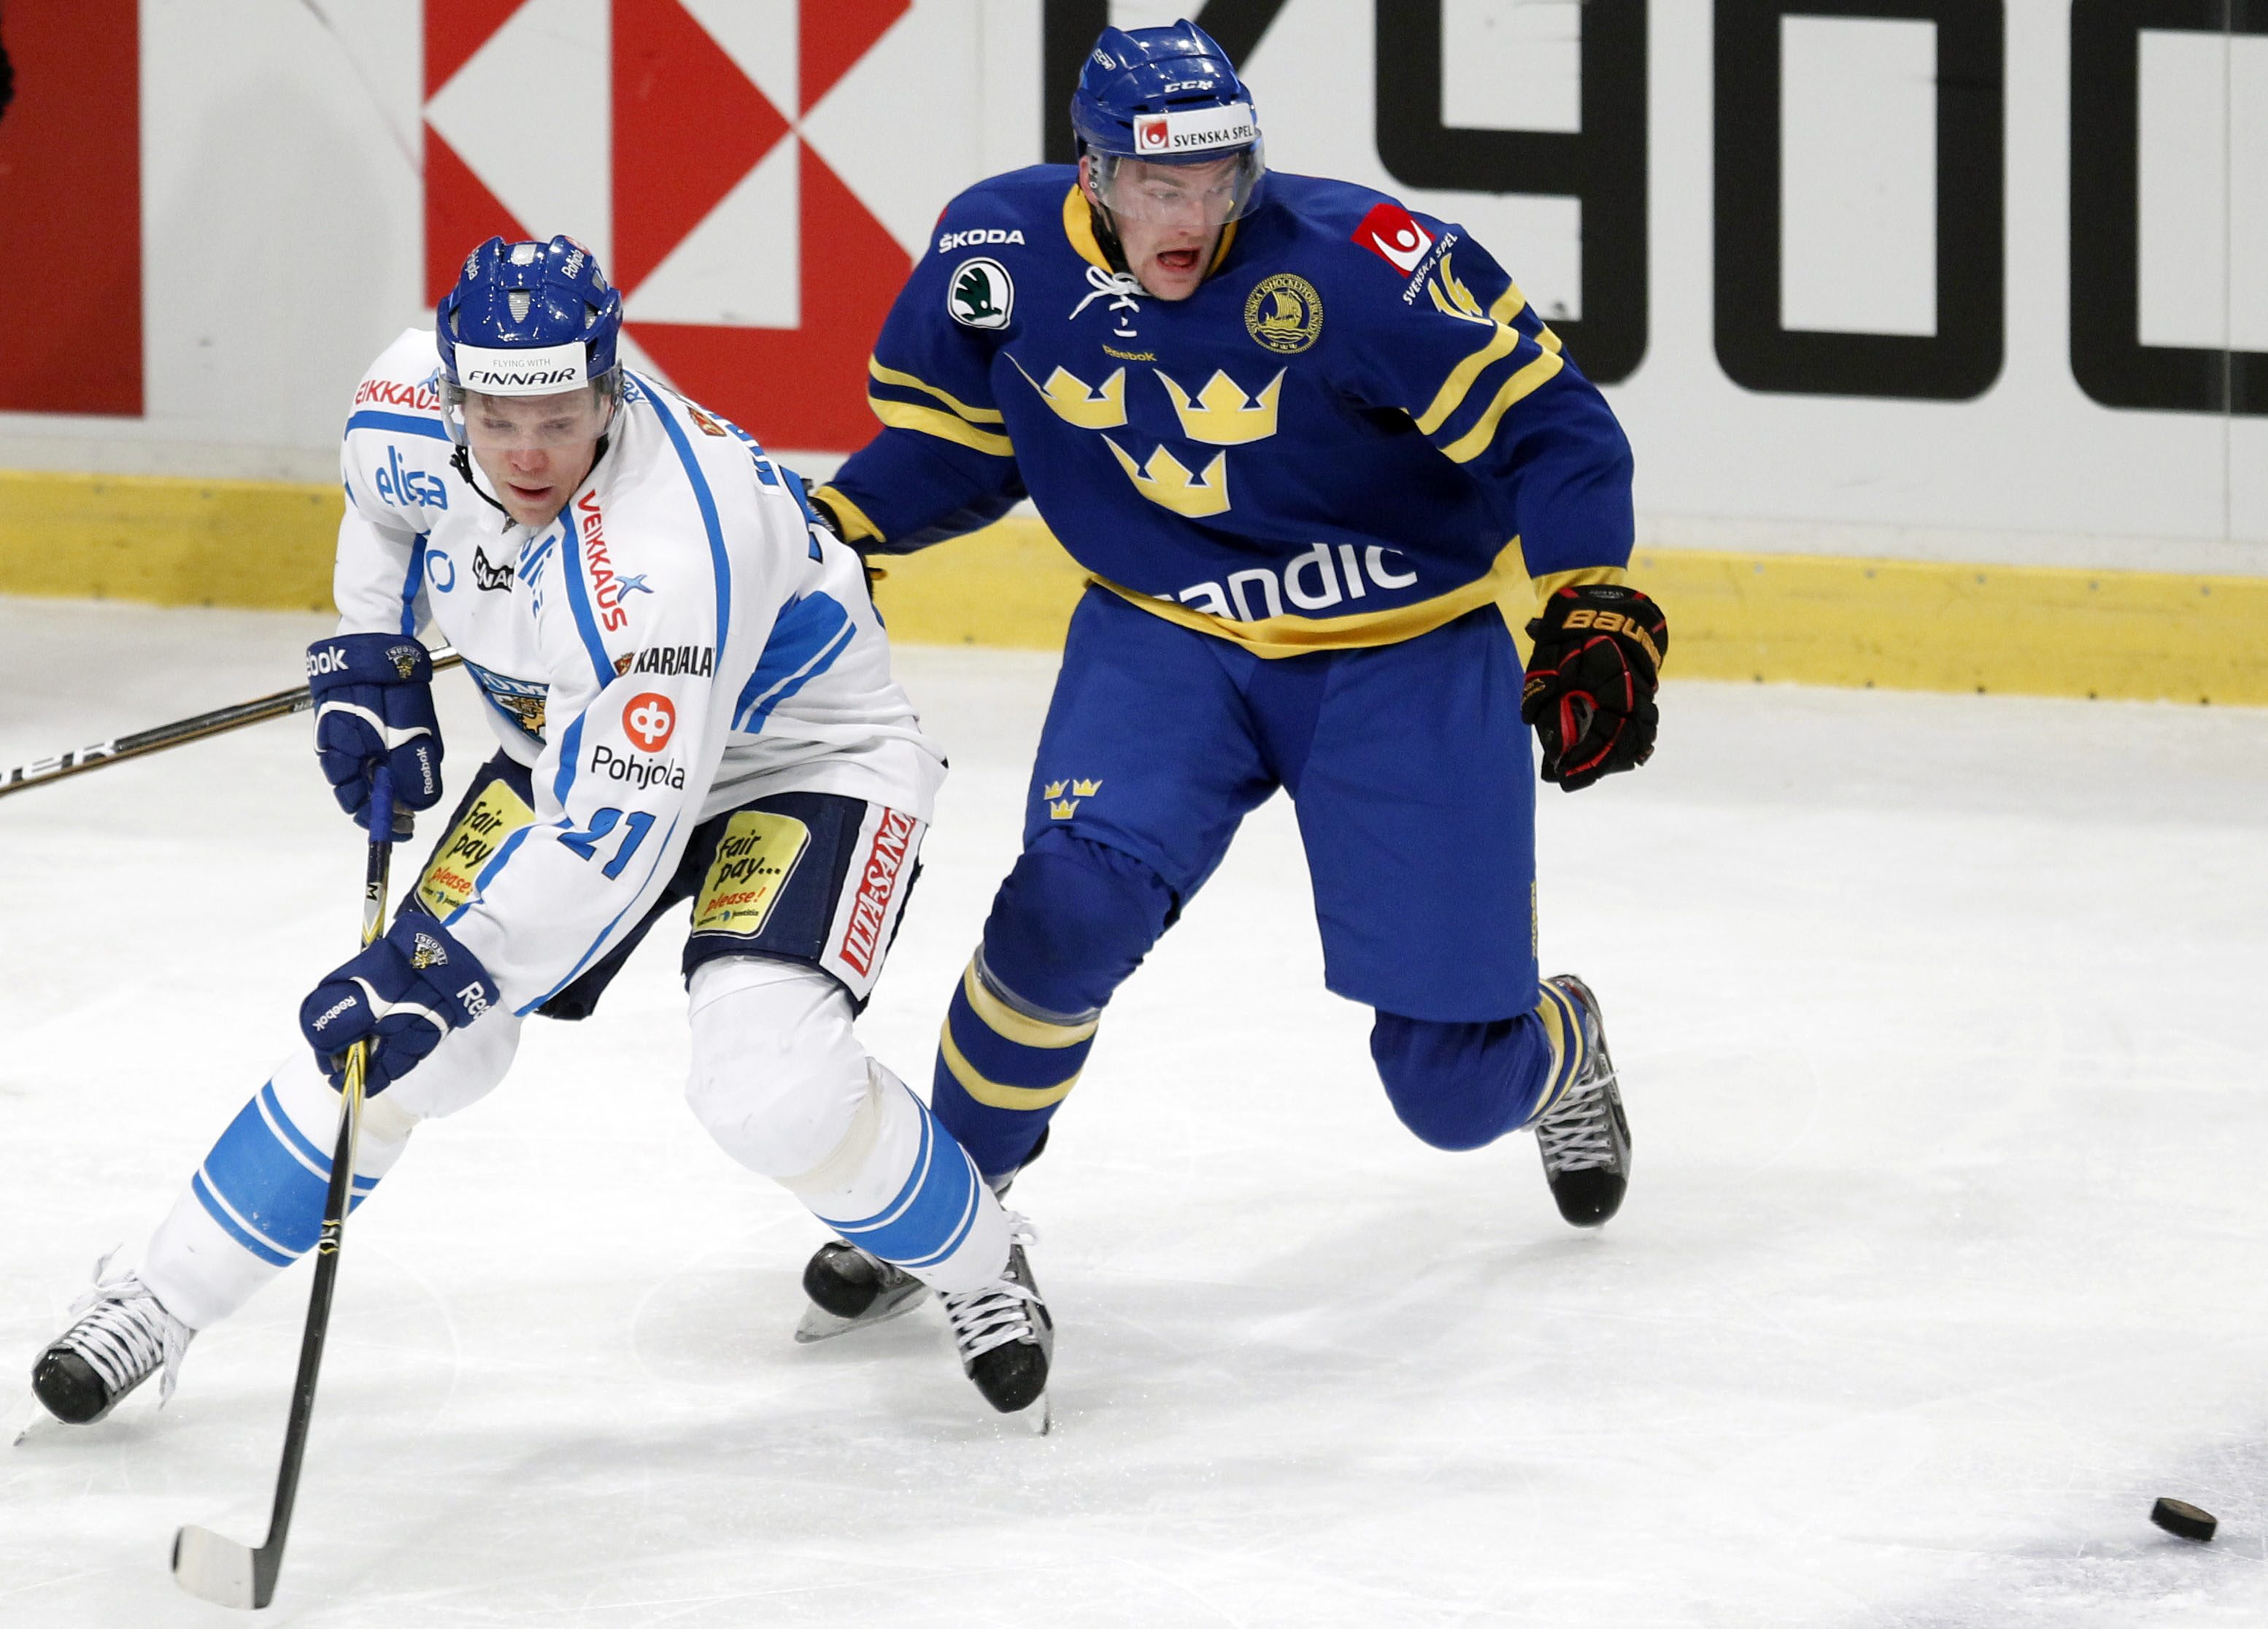  Skarpskjutande backen Janne Niskala har varit given i landslaget de senate åren. Här kämpar han om pucken med Tre Kronors Mattias Ekholm under Oddset Hockey Games i februari.